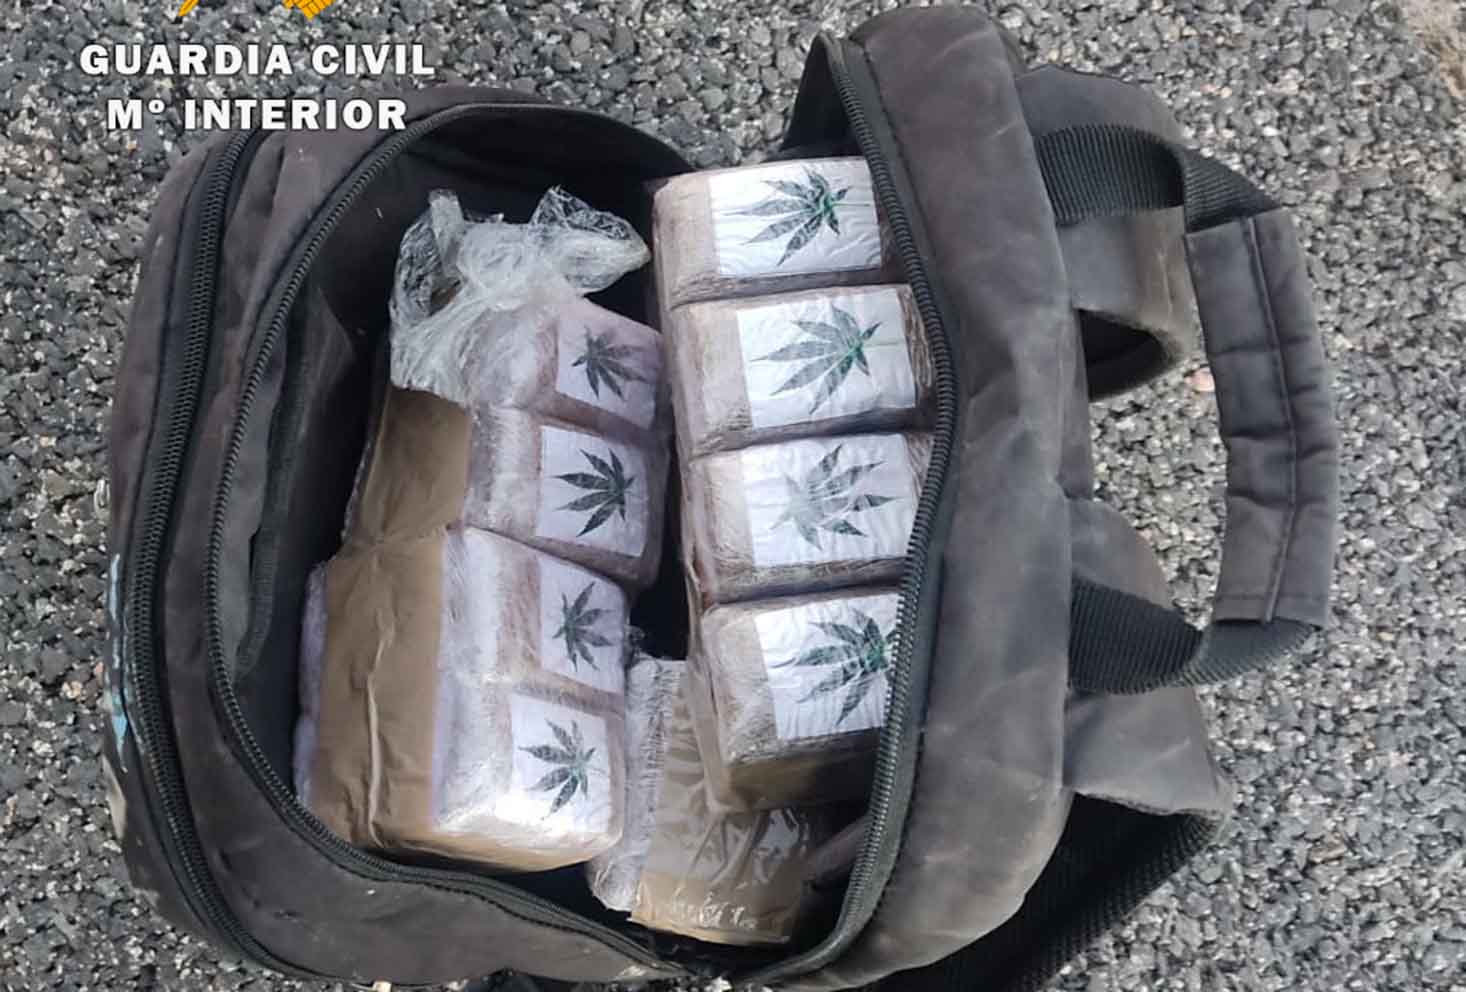 La mochila intervenida por la Guardia Civil, con más de 8 kilos de hachís separados en pastillas de 50 gramos de peso cada una.